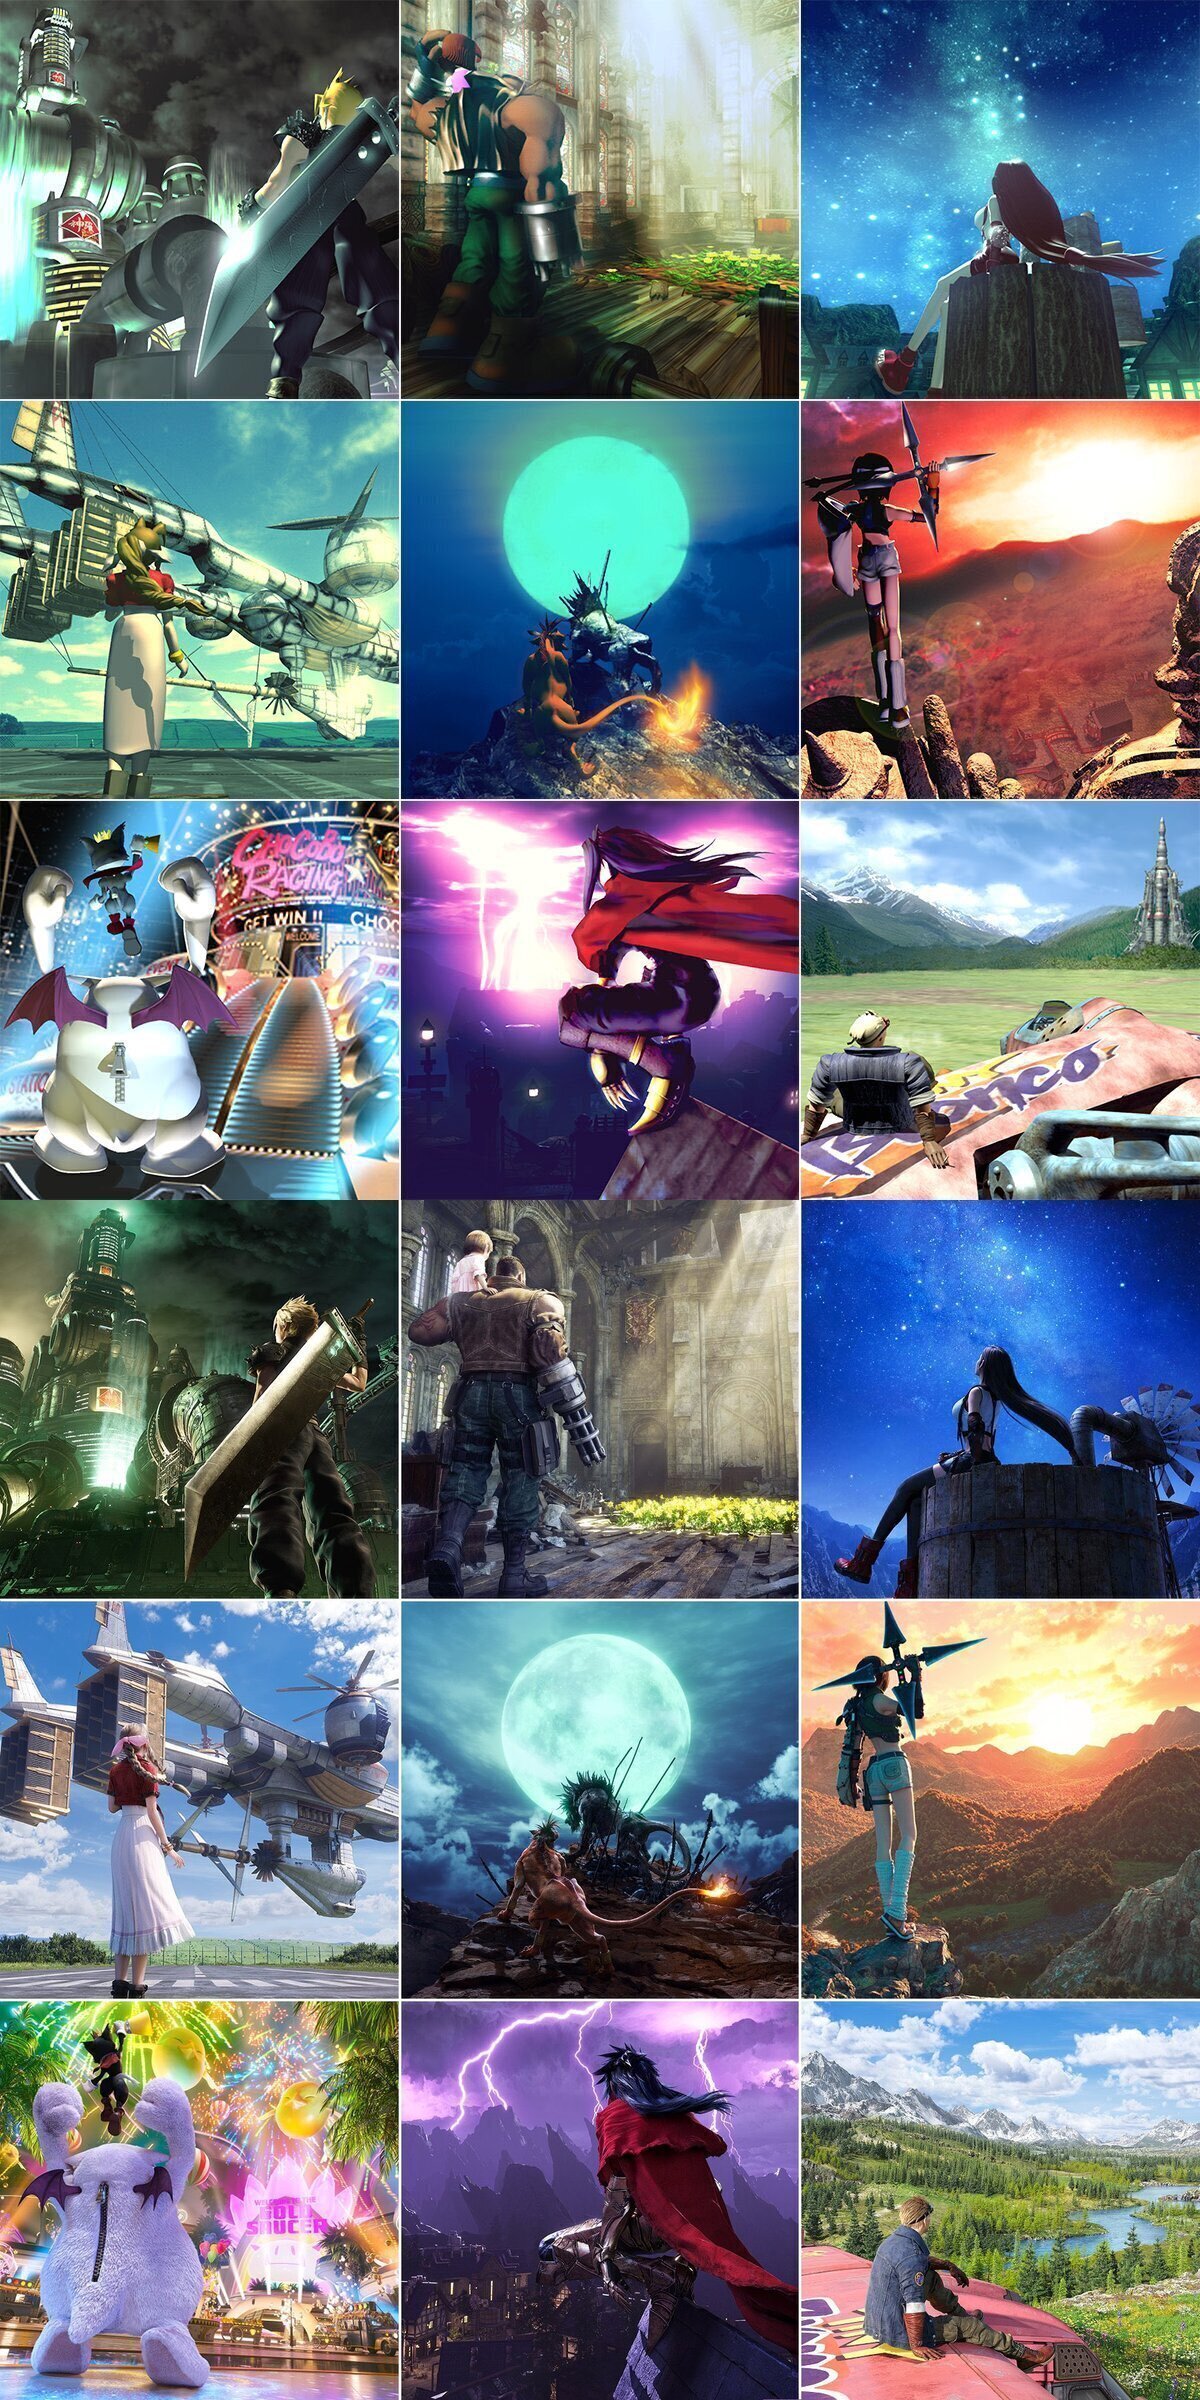 ¡Hey, fans de Final Fantasy 7! ¿Prefieren el arte clásico o moderno? Por RetroGameCO